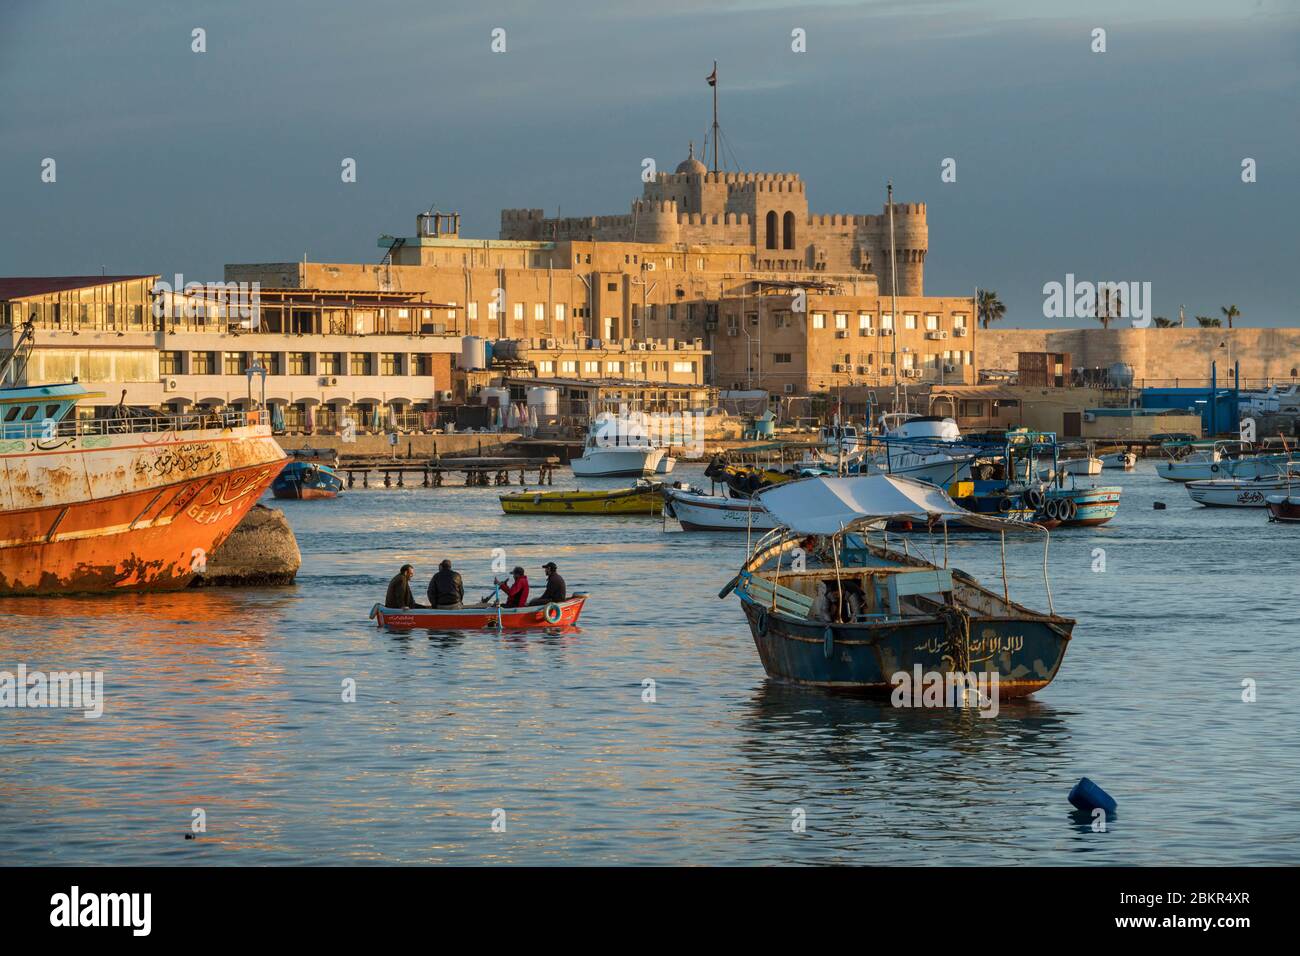 Ägypten, Unterägypten, die Mittelmeerküste, Alexandria, die Corniche, Fischerboote in der Bucht verankert, Qait Bay Festung auf der Rückseite Stockfoto